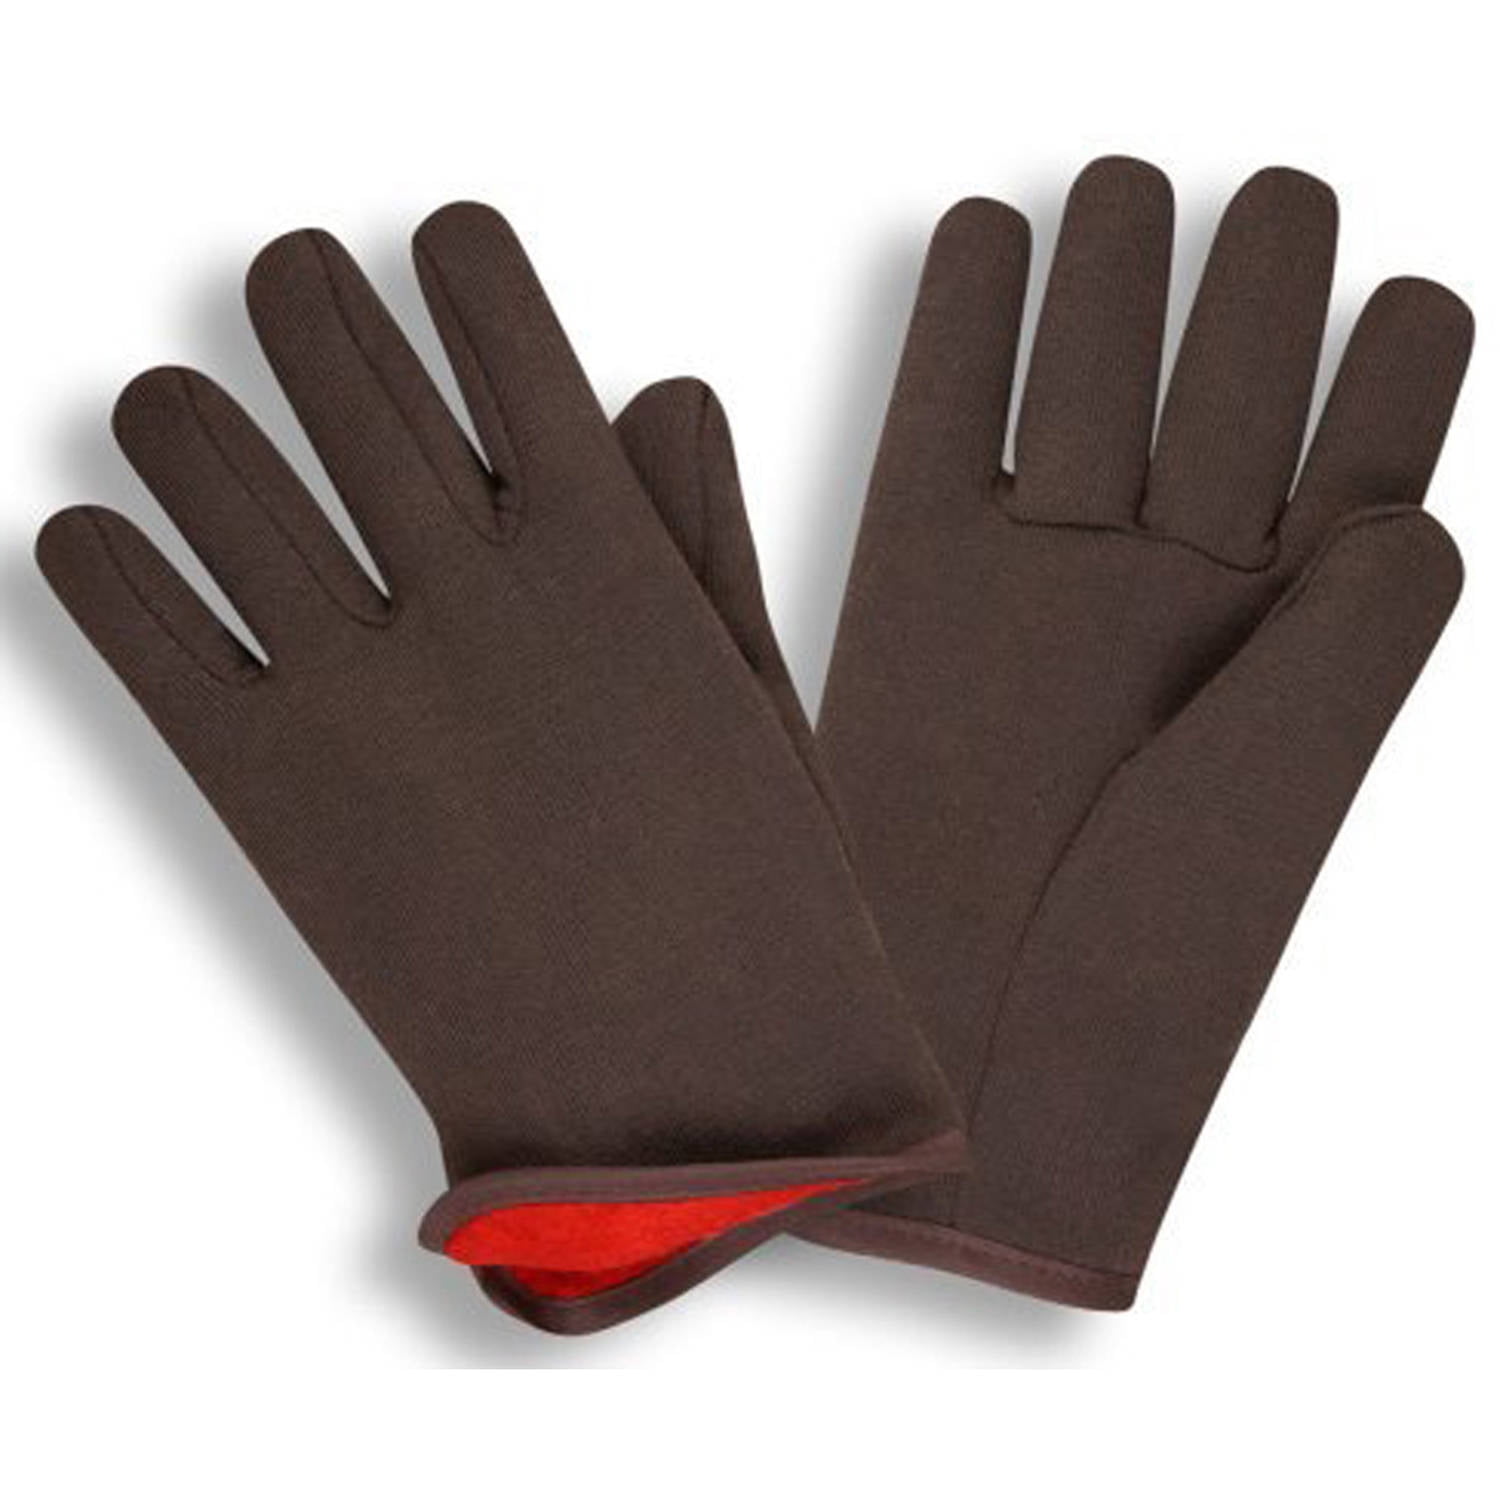 BUFF Unisex-Adult Elite Gloves, Bonefish, X-Large 